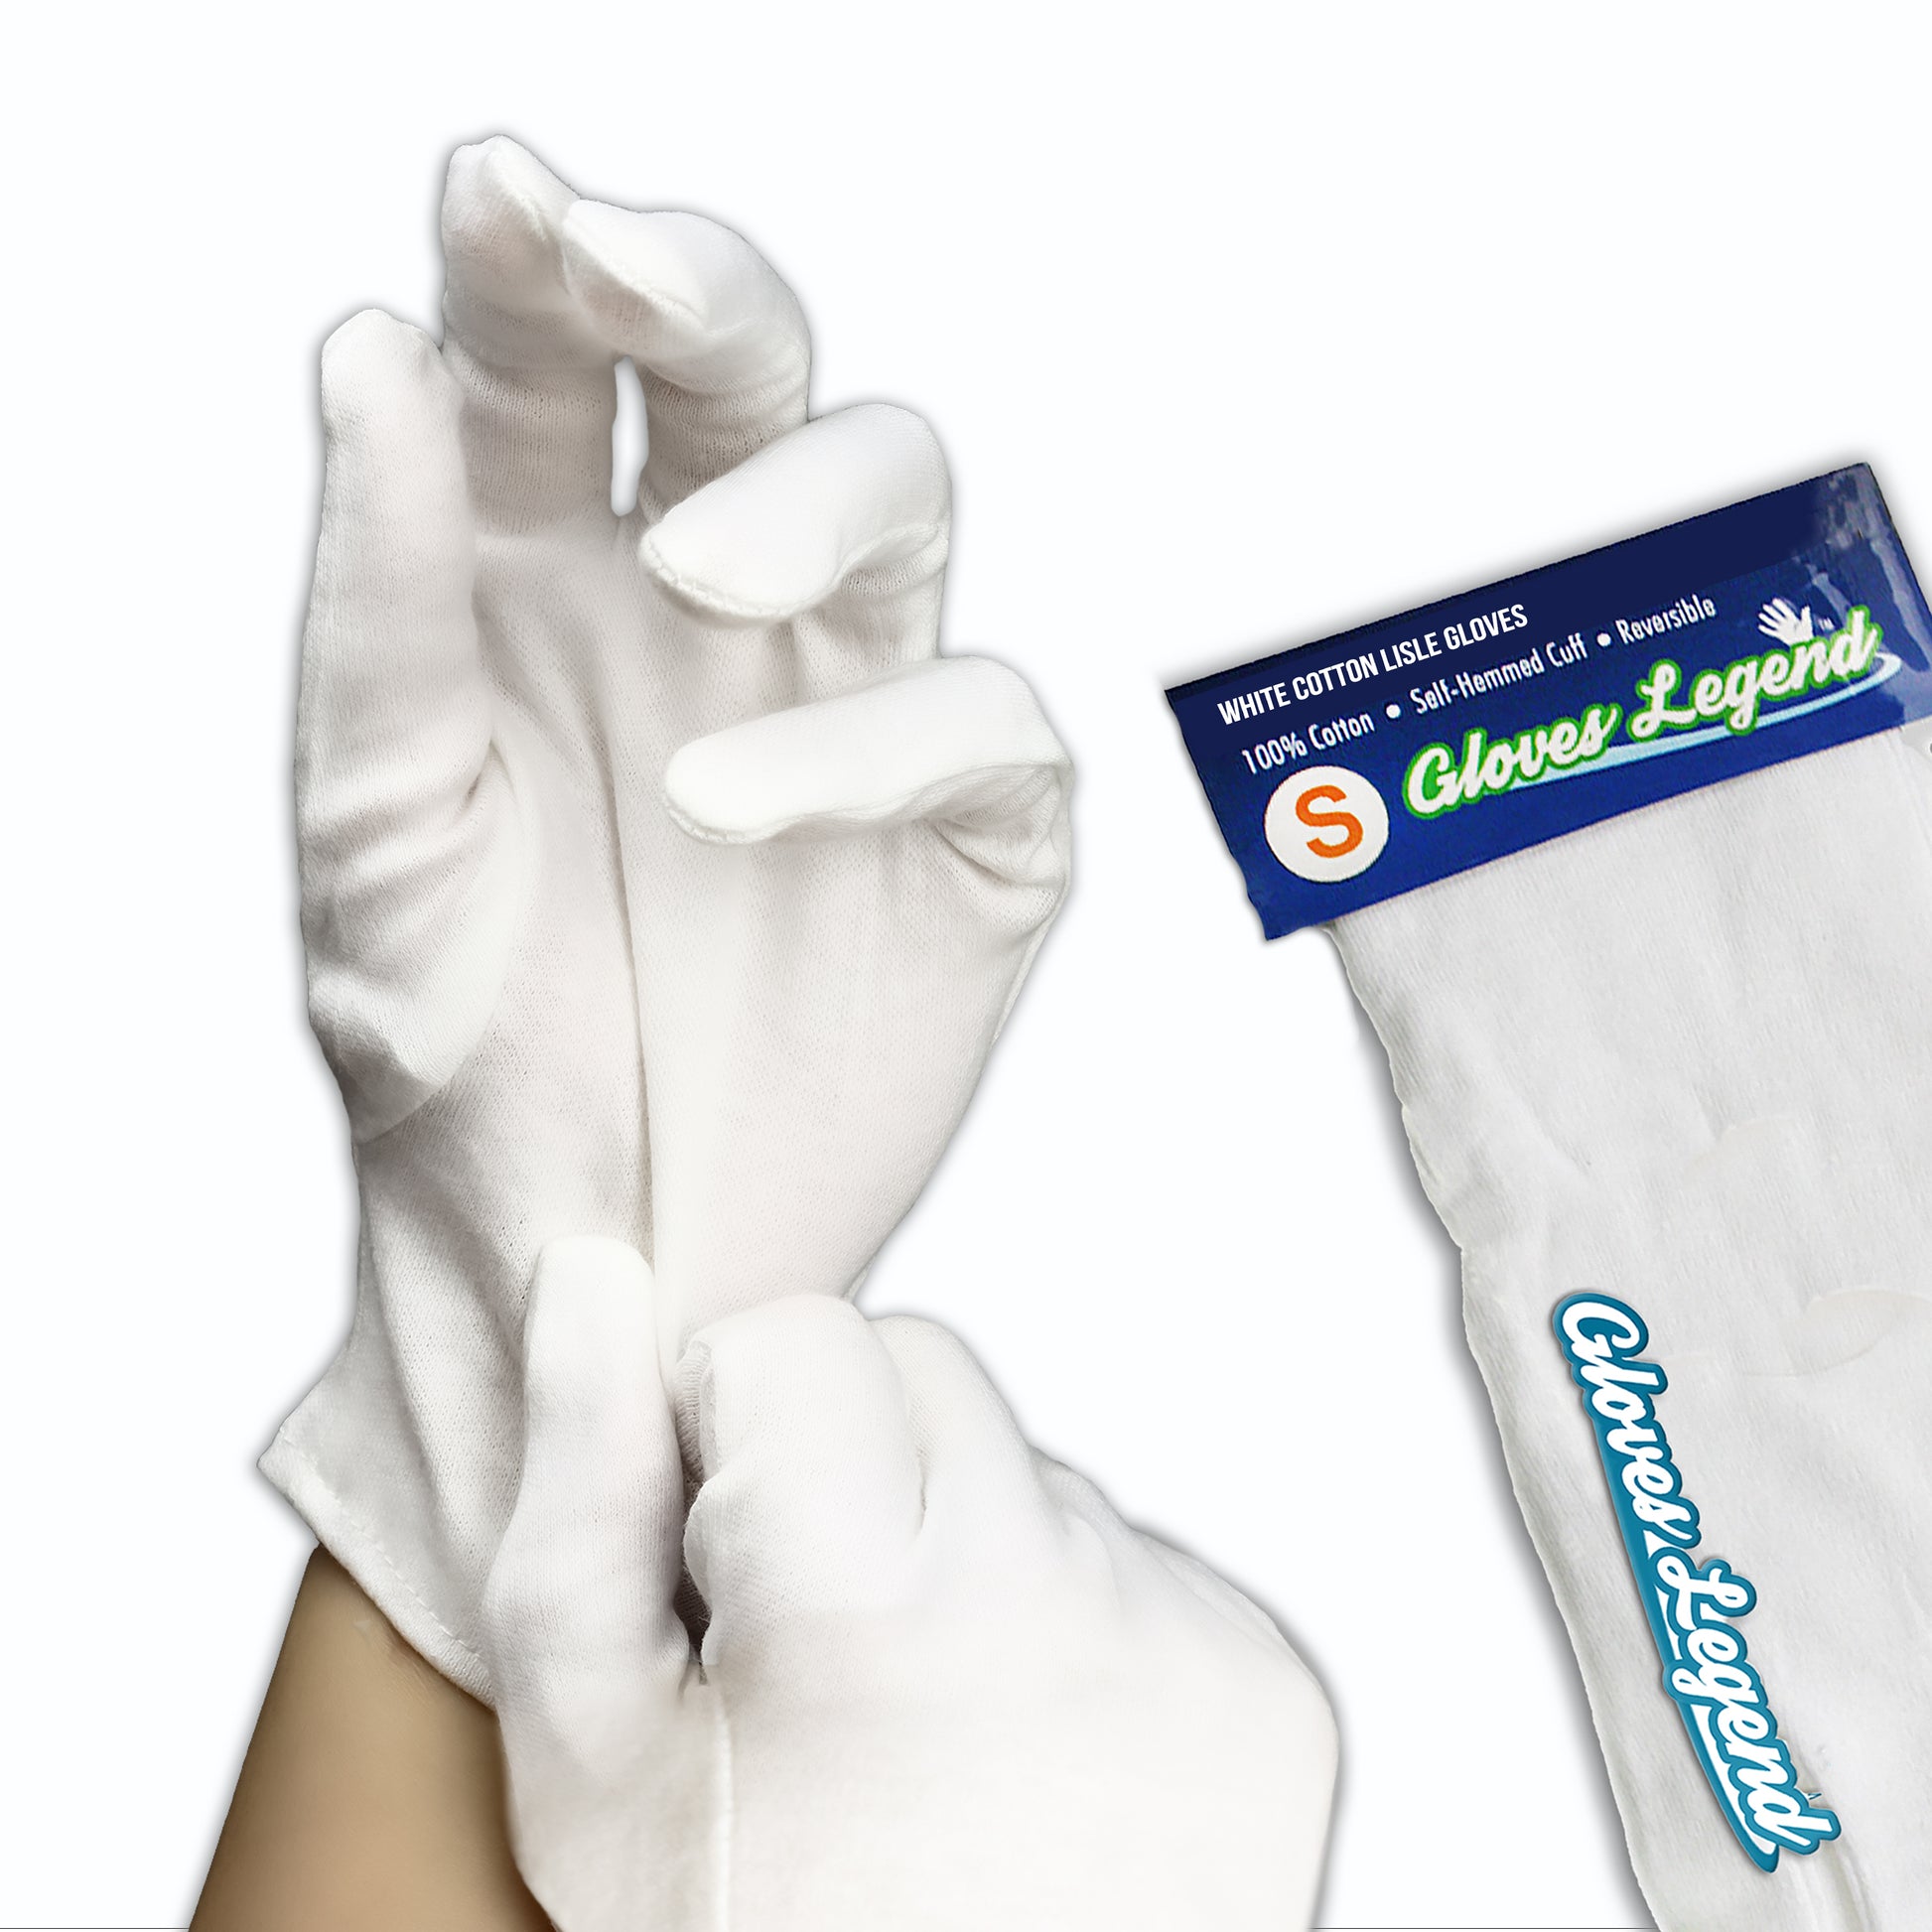 Cotton Weight Gloves, White Cotton Gloves